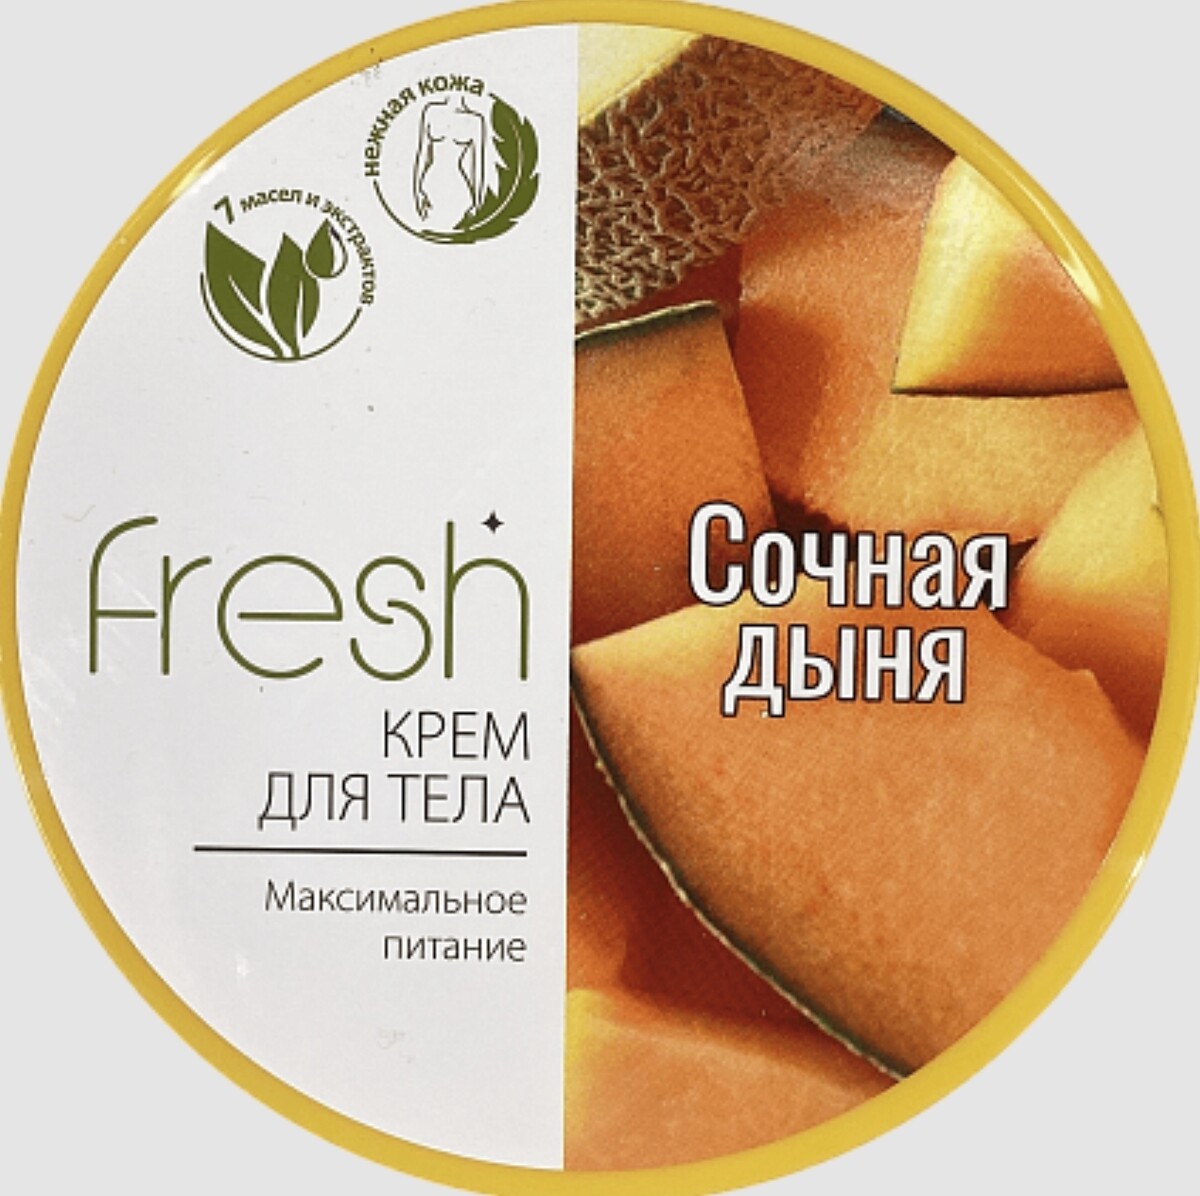 Fresh крем для тела максимальное питание сочная дыня 250г крем для тела ecolatier organic coconut питание